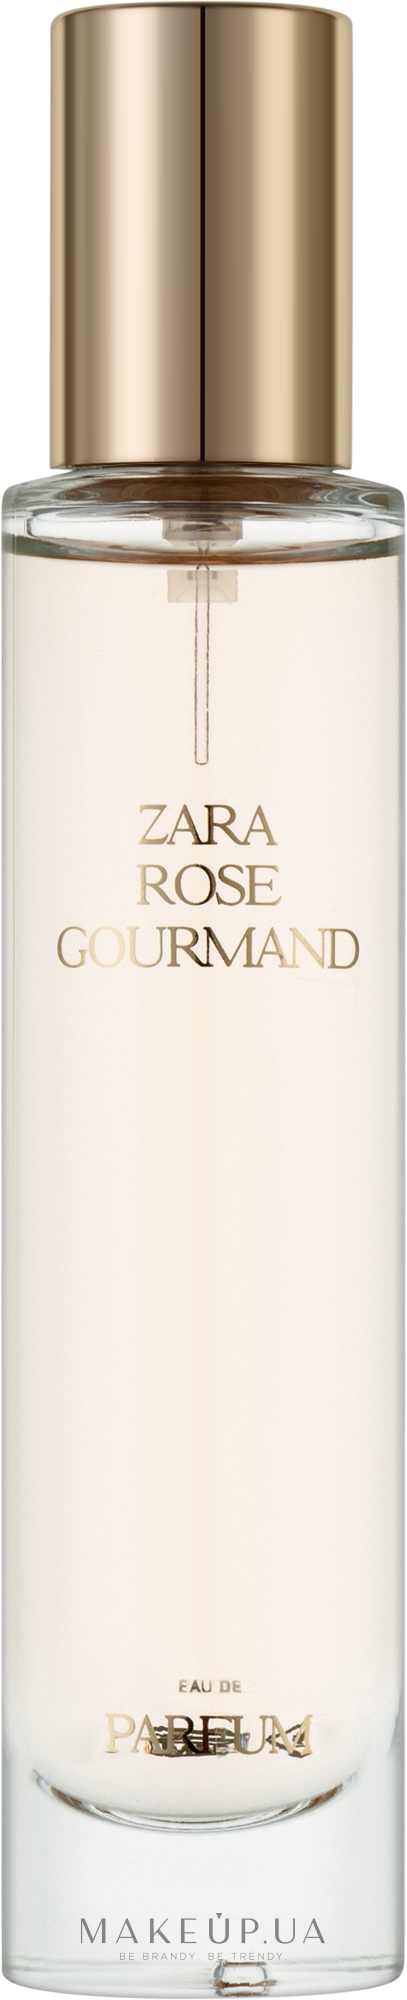 Zara Rose Gourmand - One-color